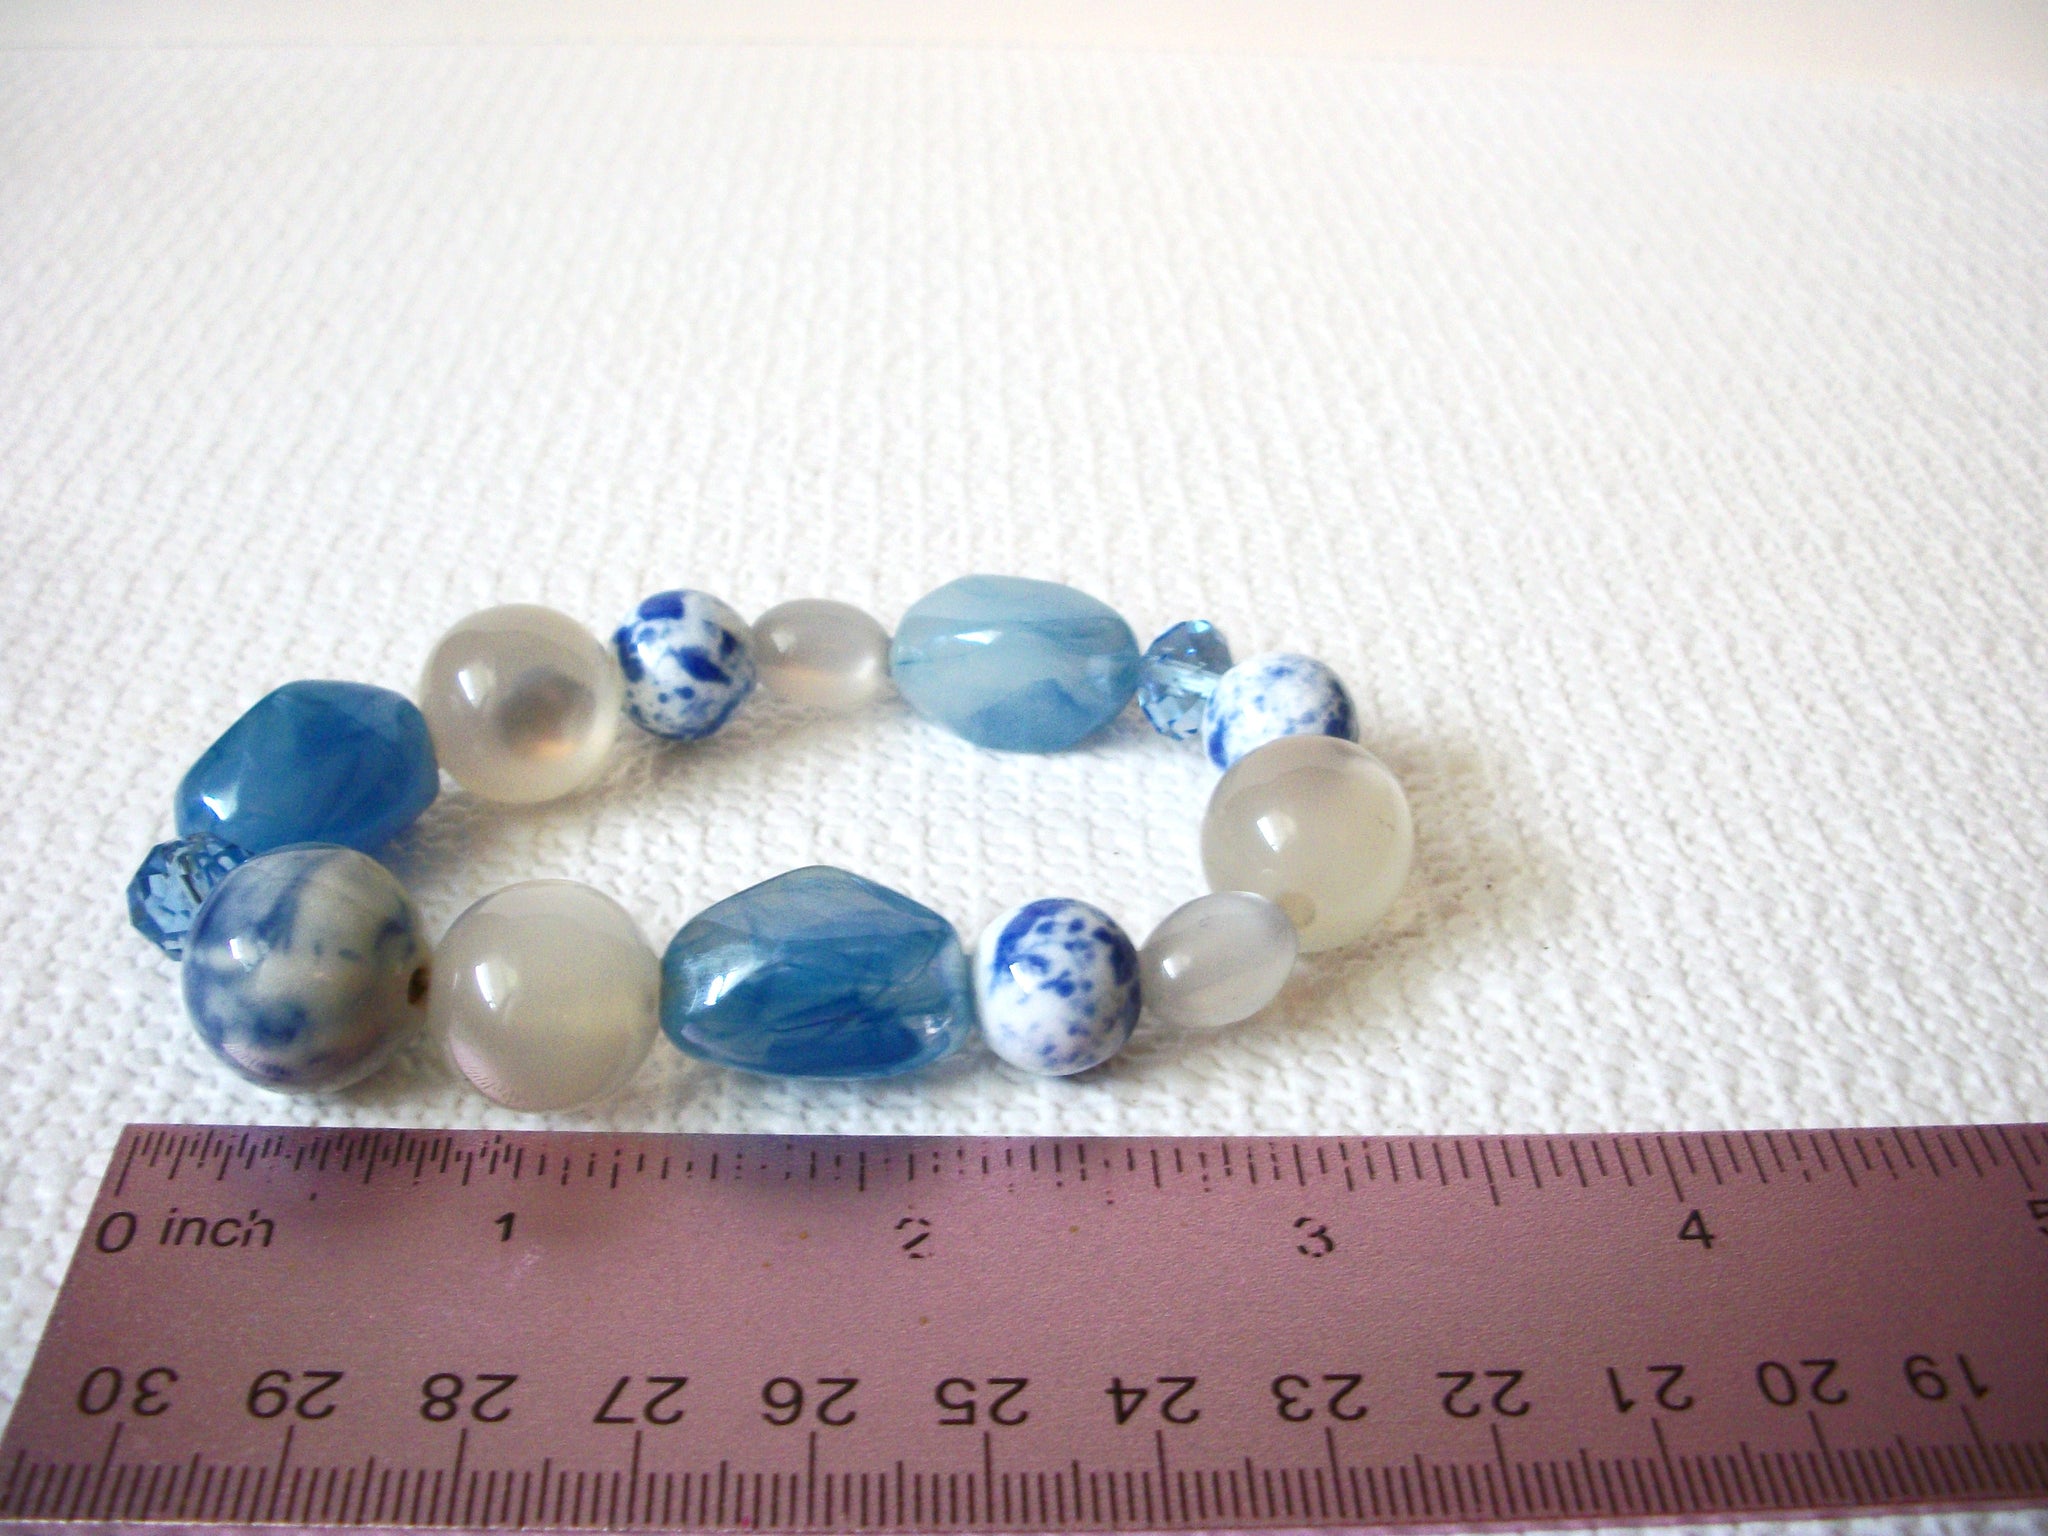 Retro Blue White Moon Glow Marbleized Bracelet 92720